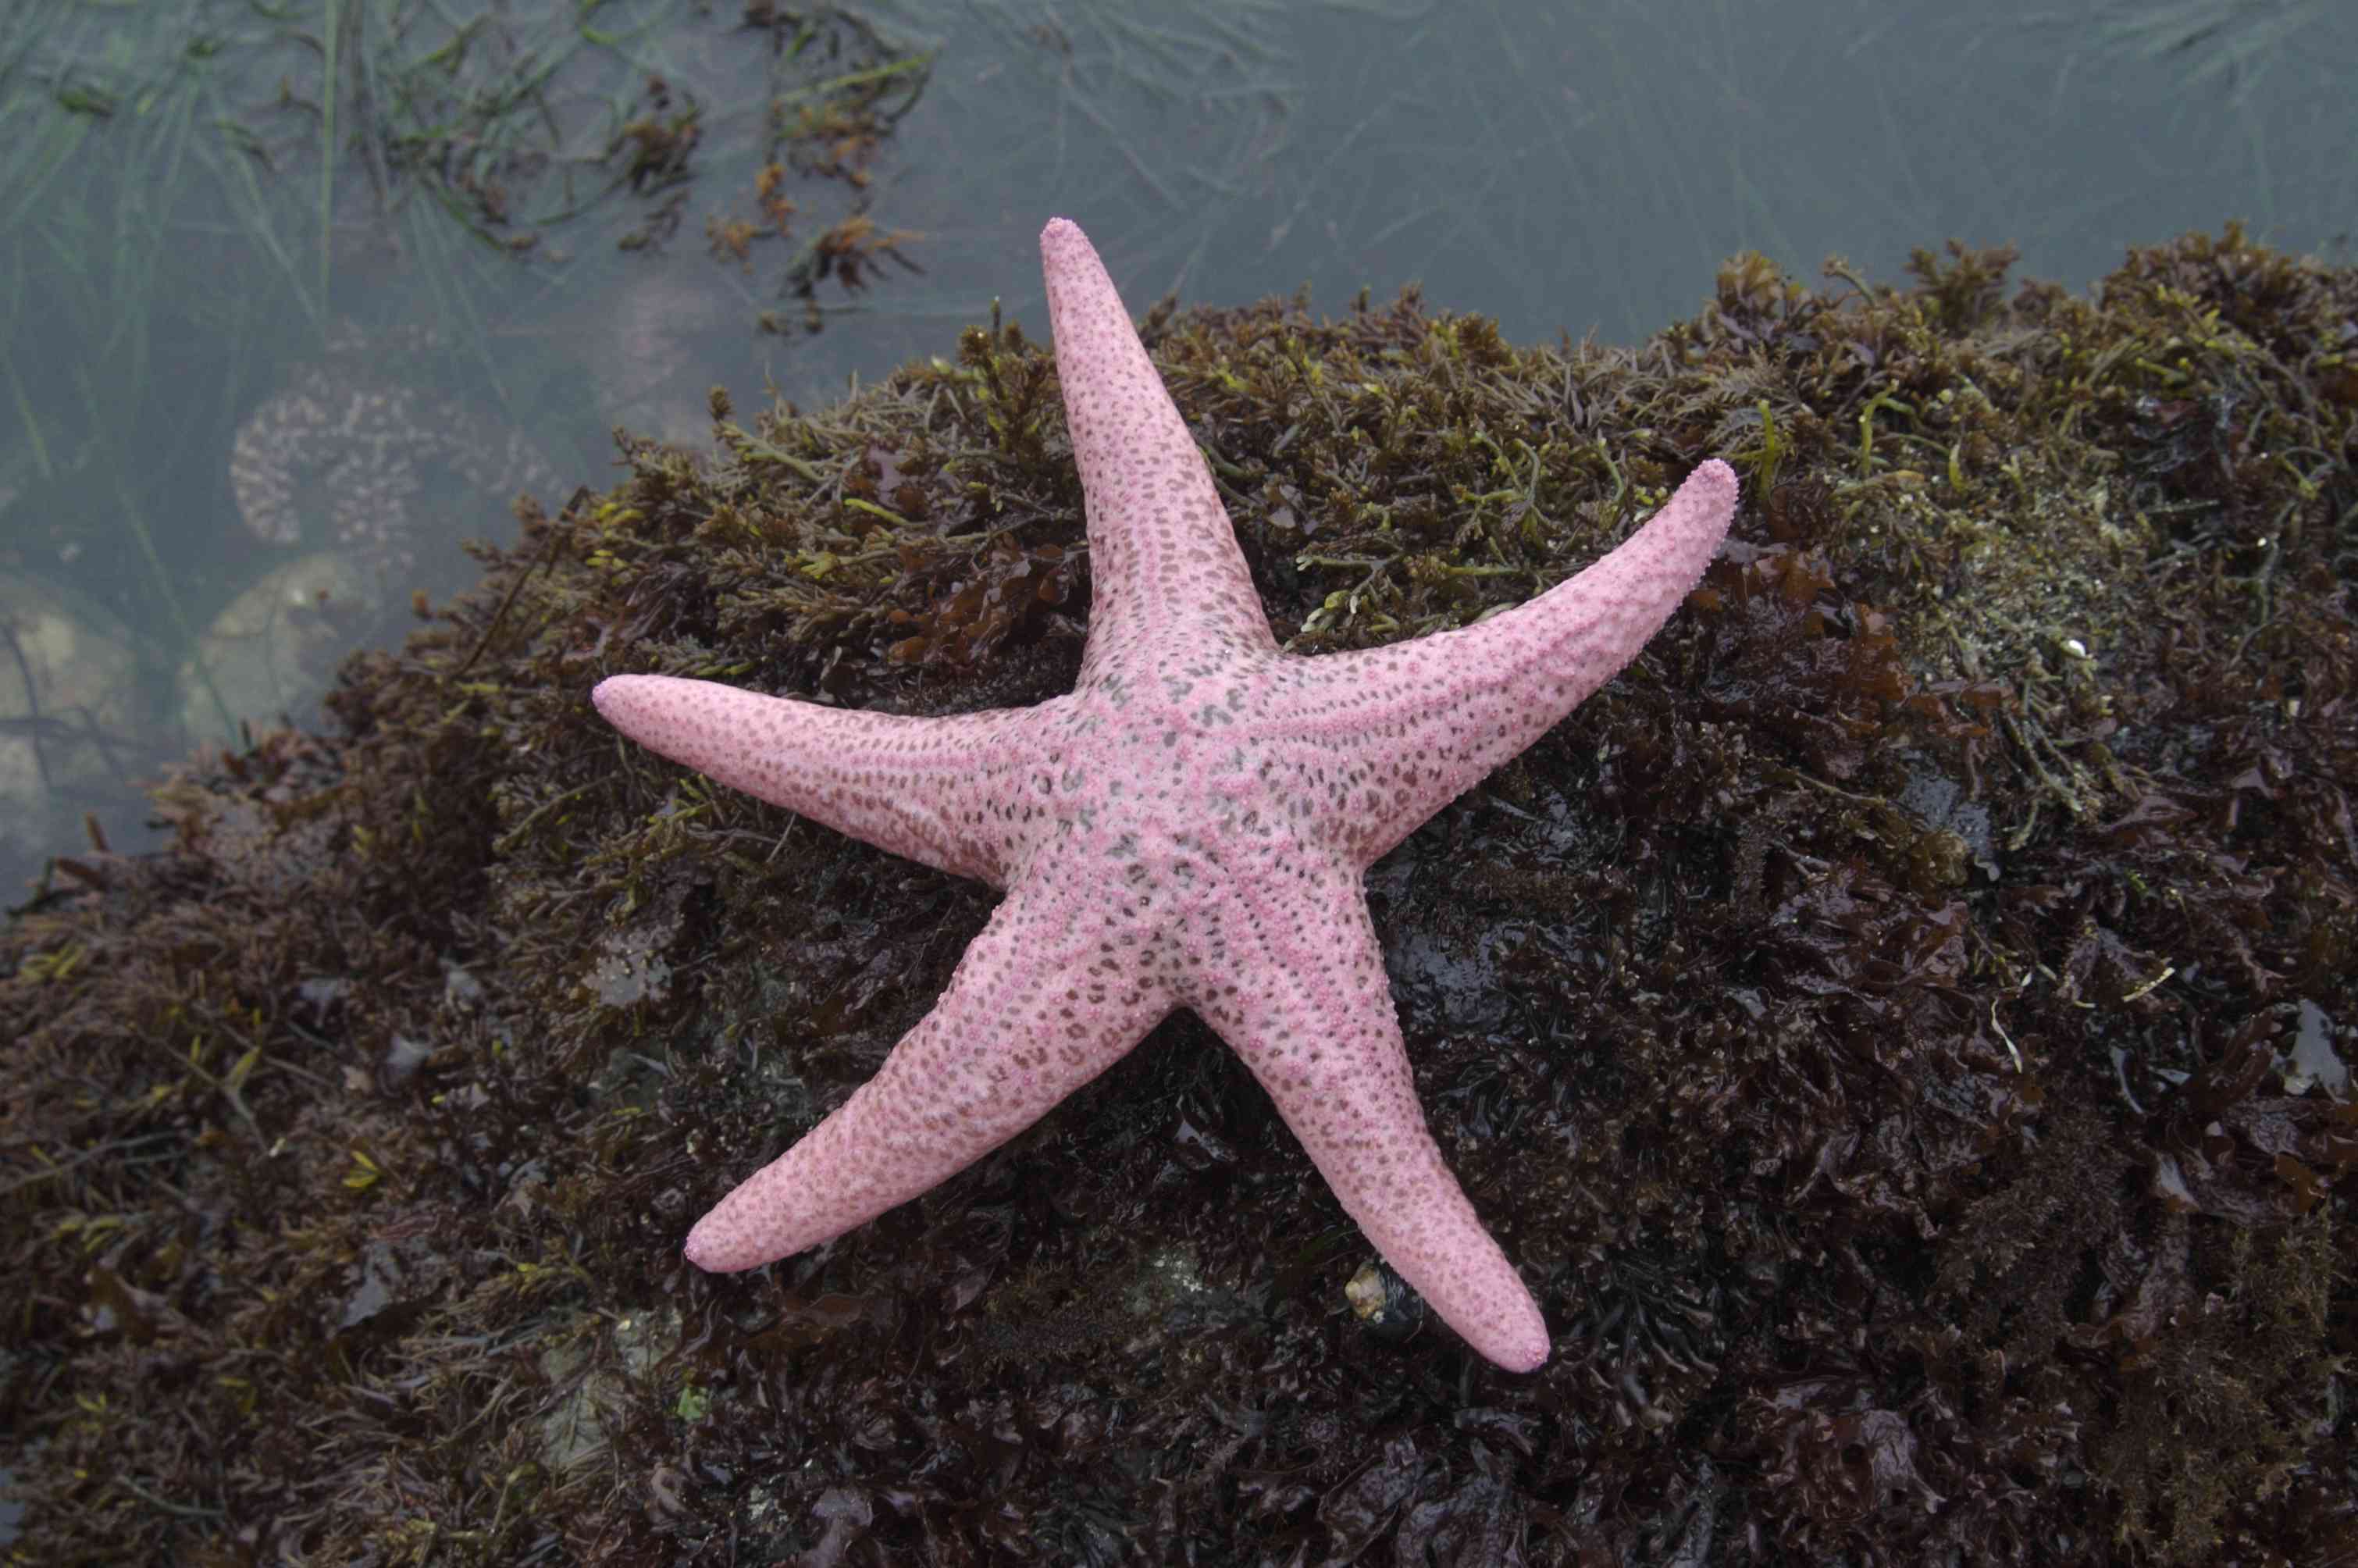 Starfish types